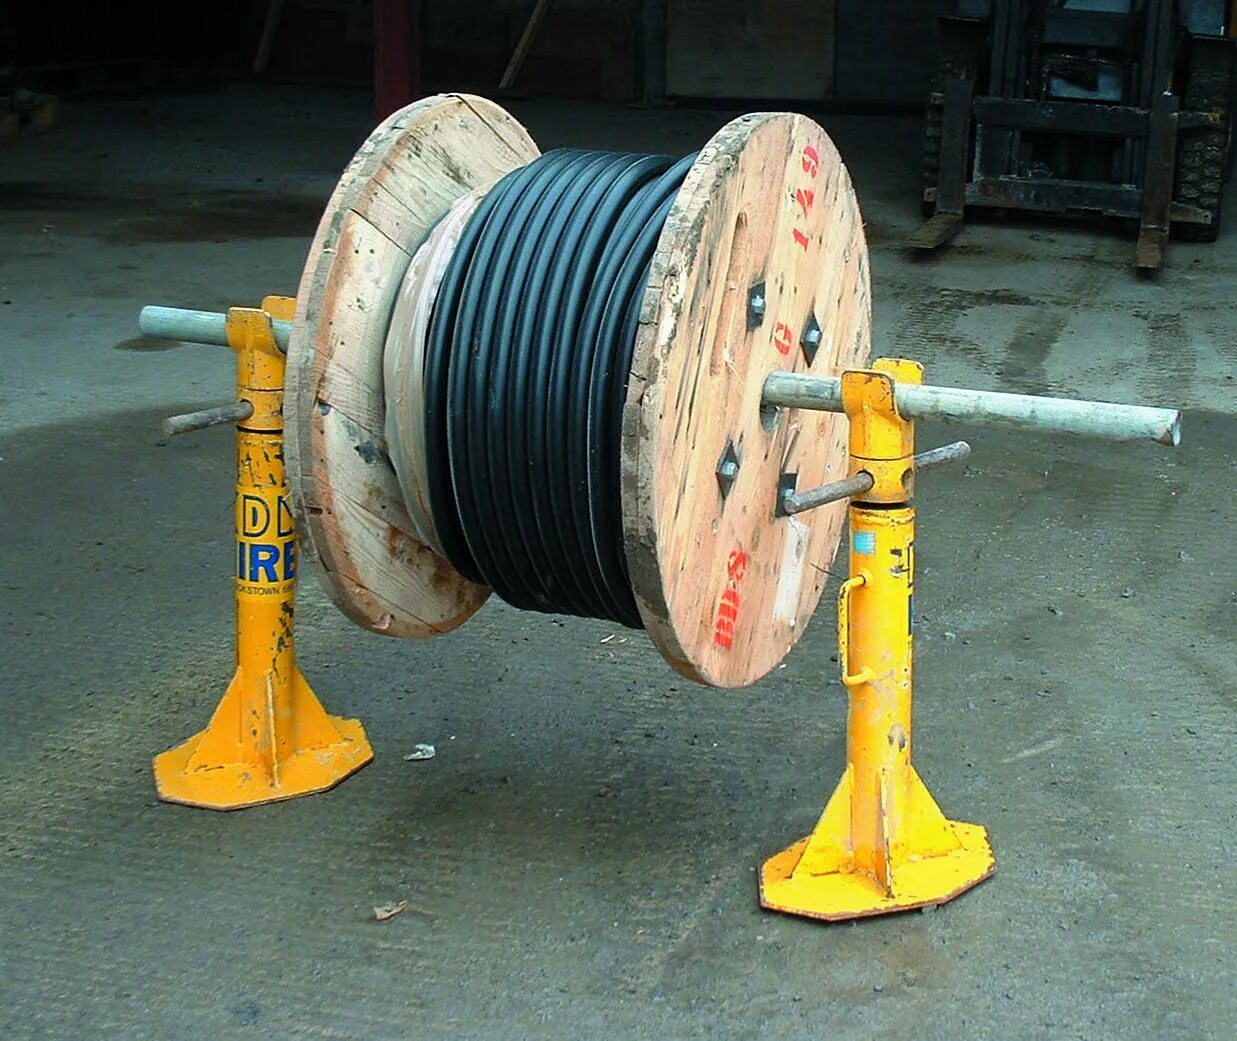 Srk90/110 кабельный барабан. Кабельный барабан 6300 типа. Катушка для разматывания кабеля 100 метров. Моталка для кабельного барабаны 800 мм.